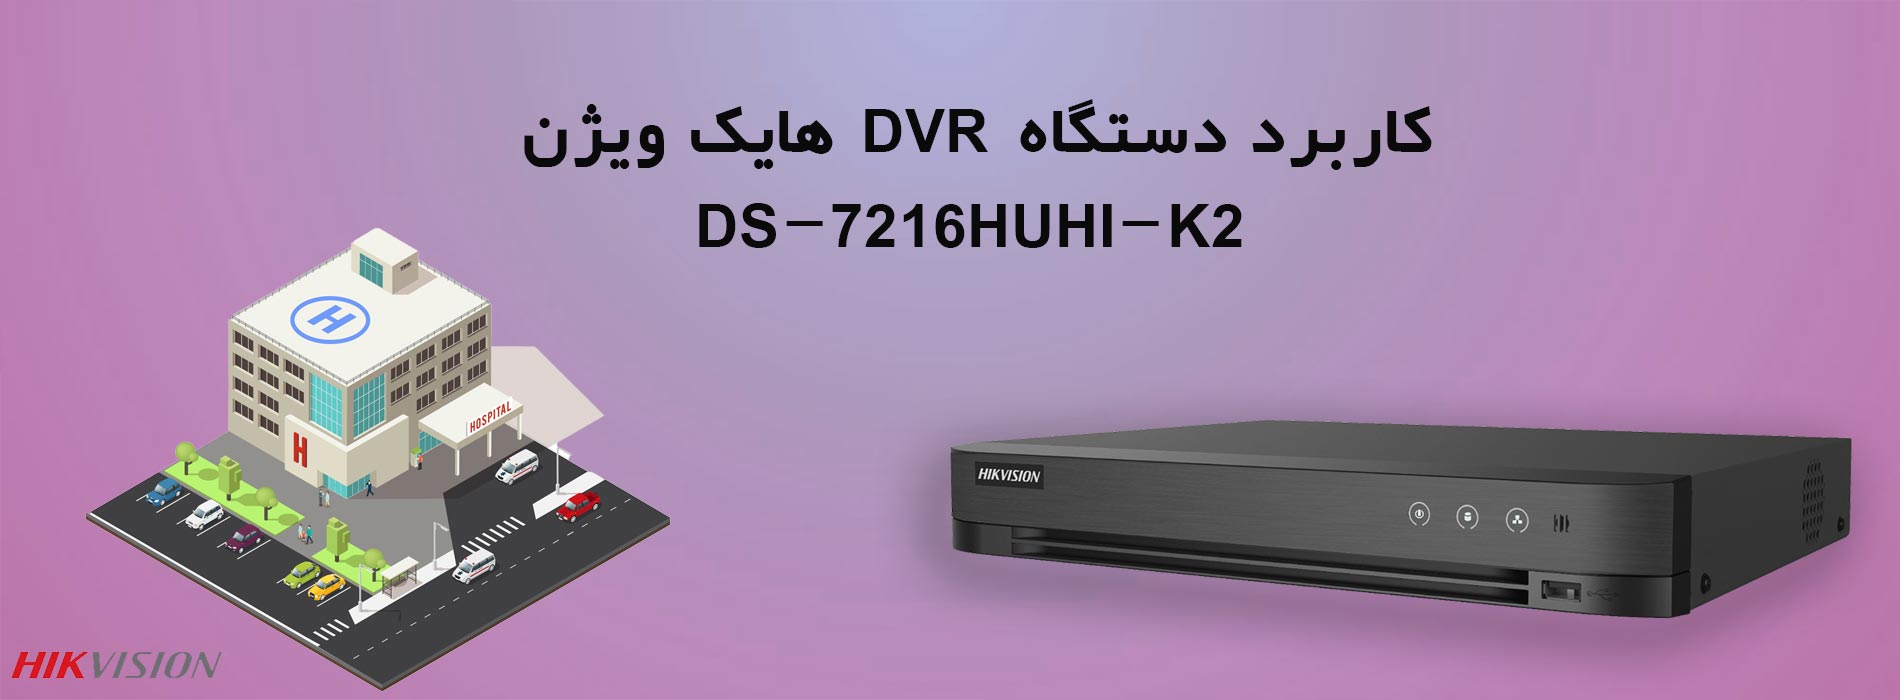 کاربرد دستگاه DVR هایک ویژن DS-7216HUHI-K2